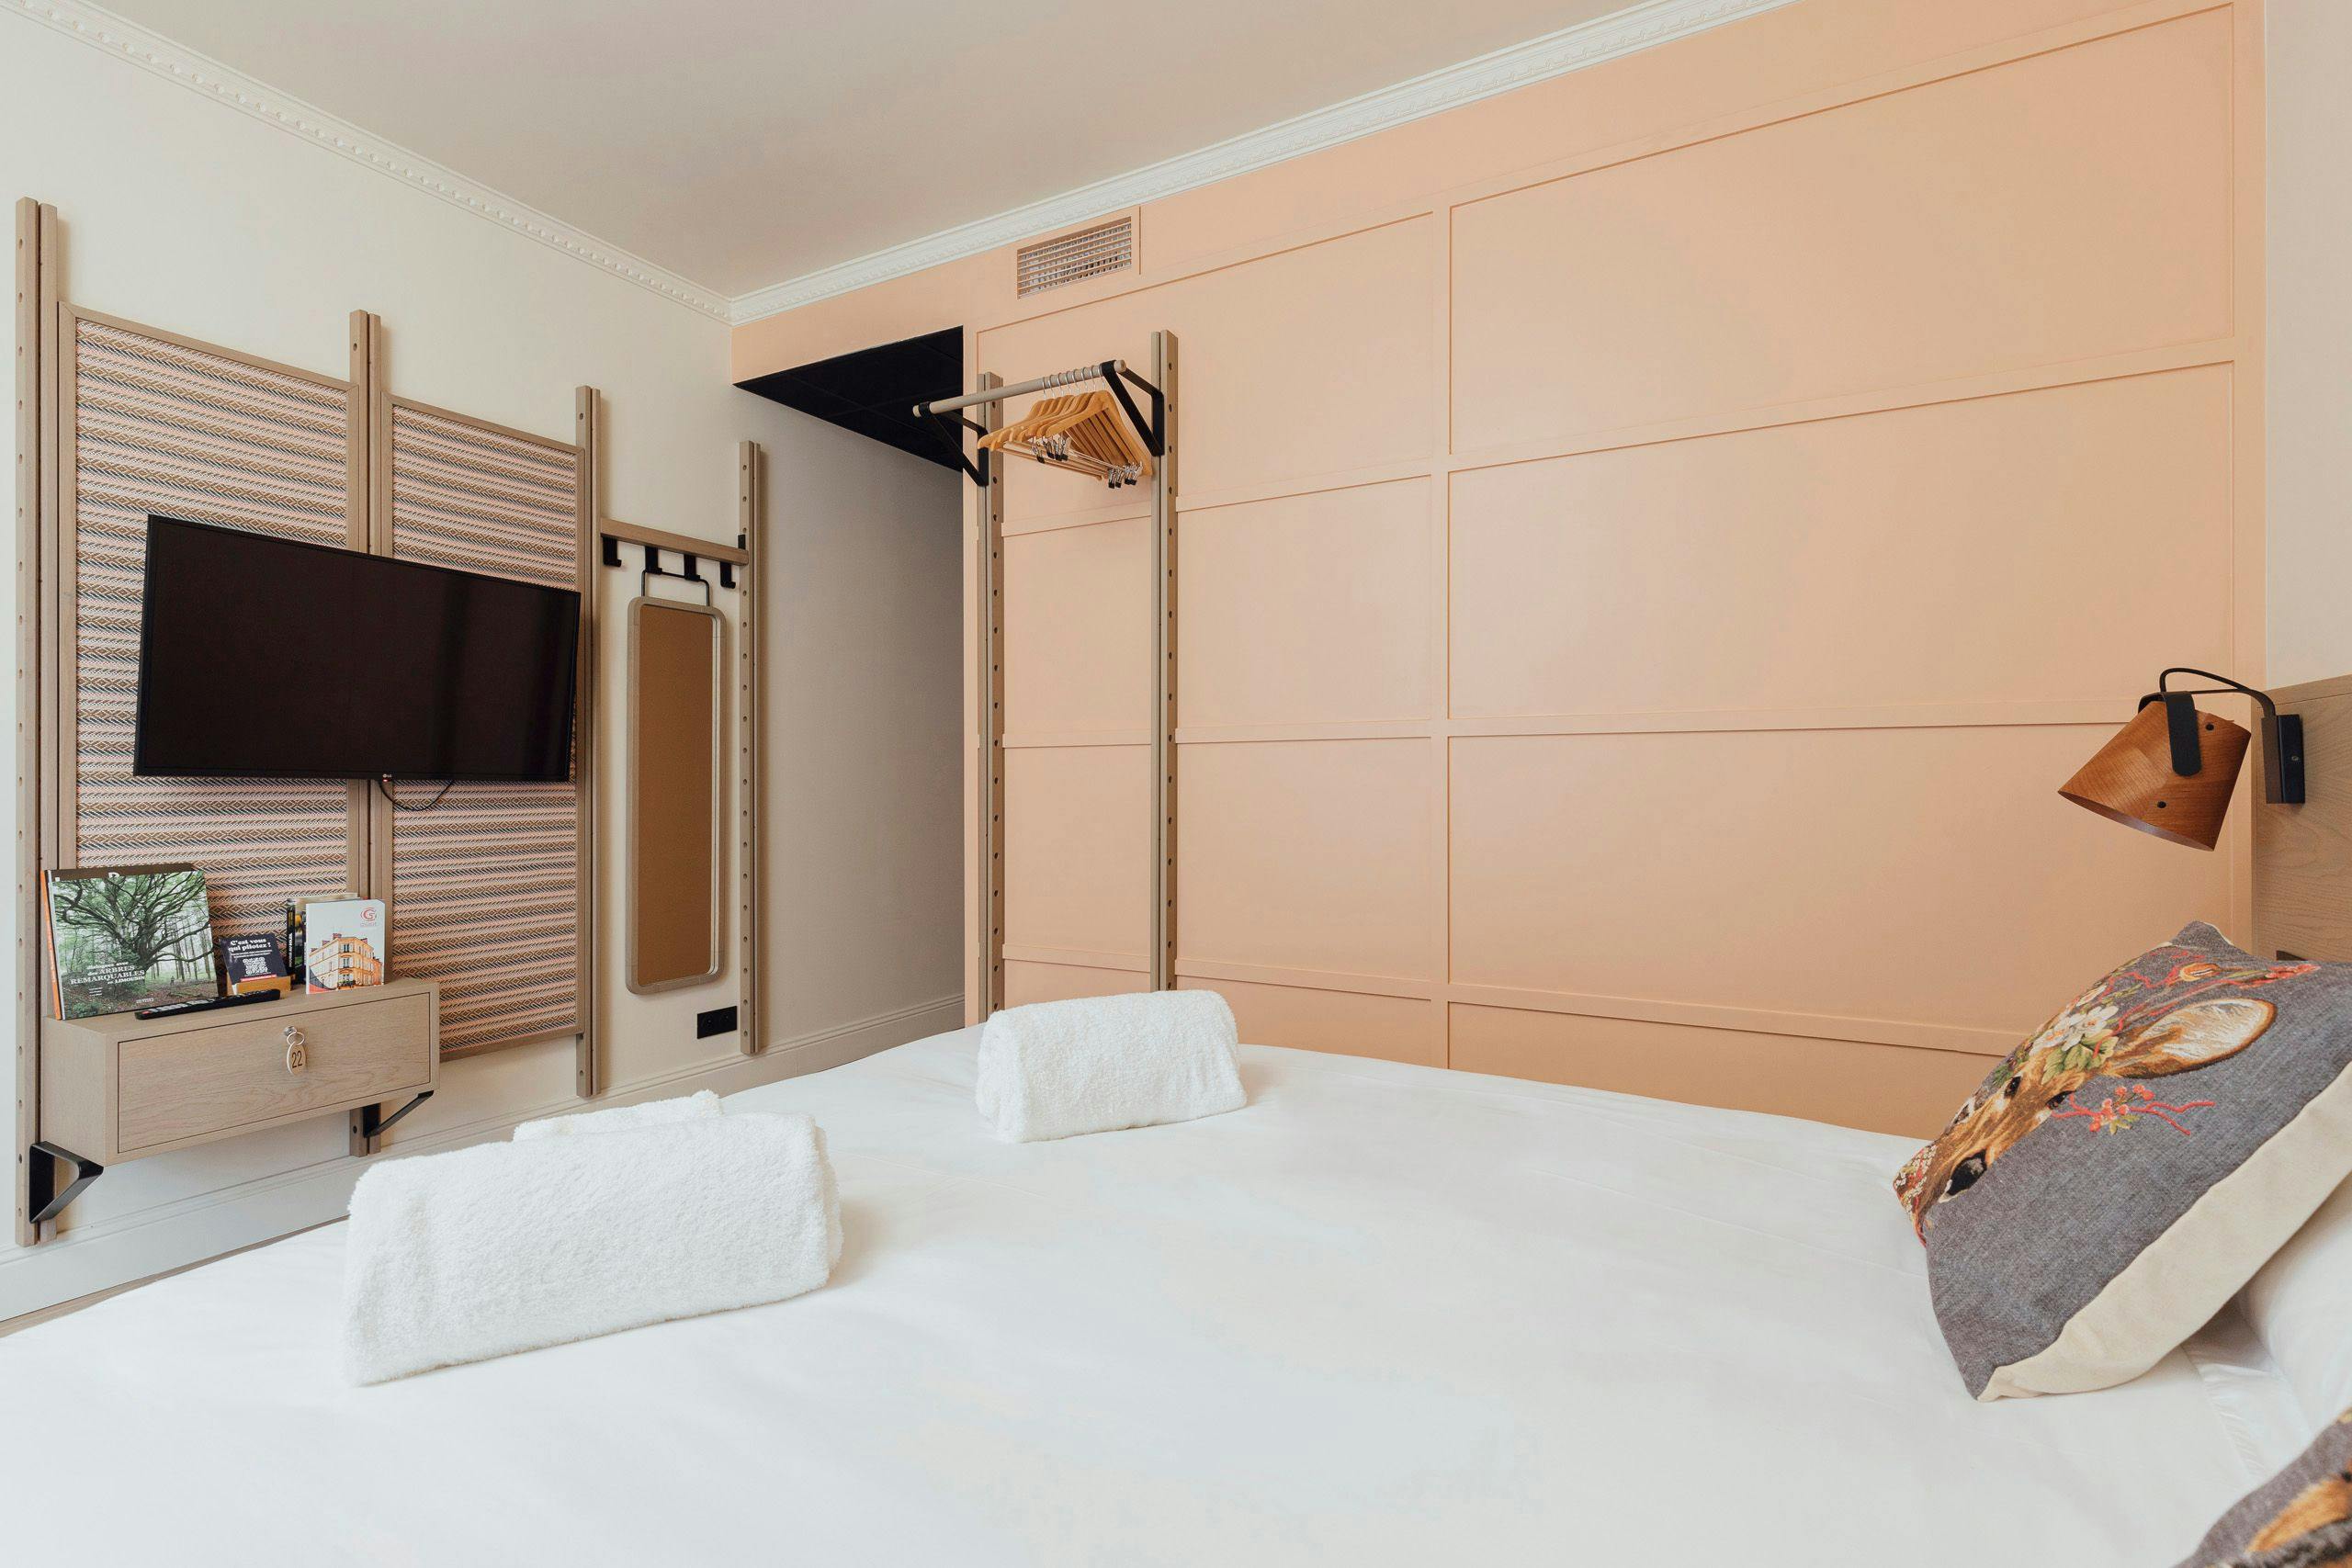 Chambre double (lit 160cm) avec sa propre salle de bain dans un appartement 5 chambres